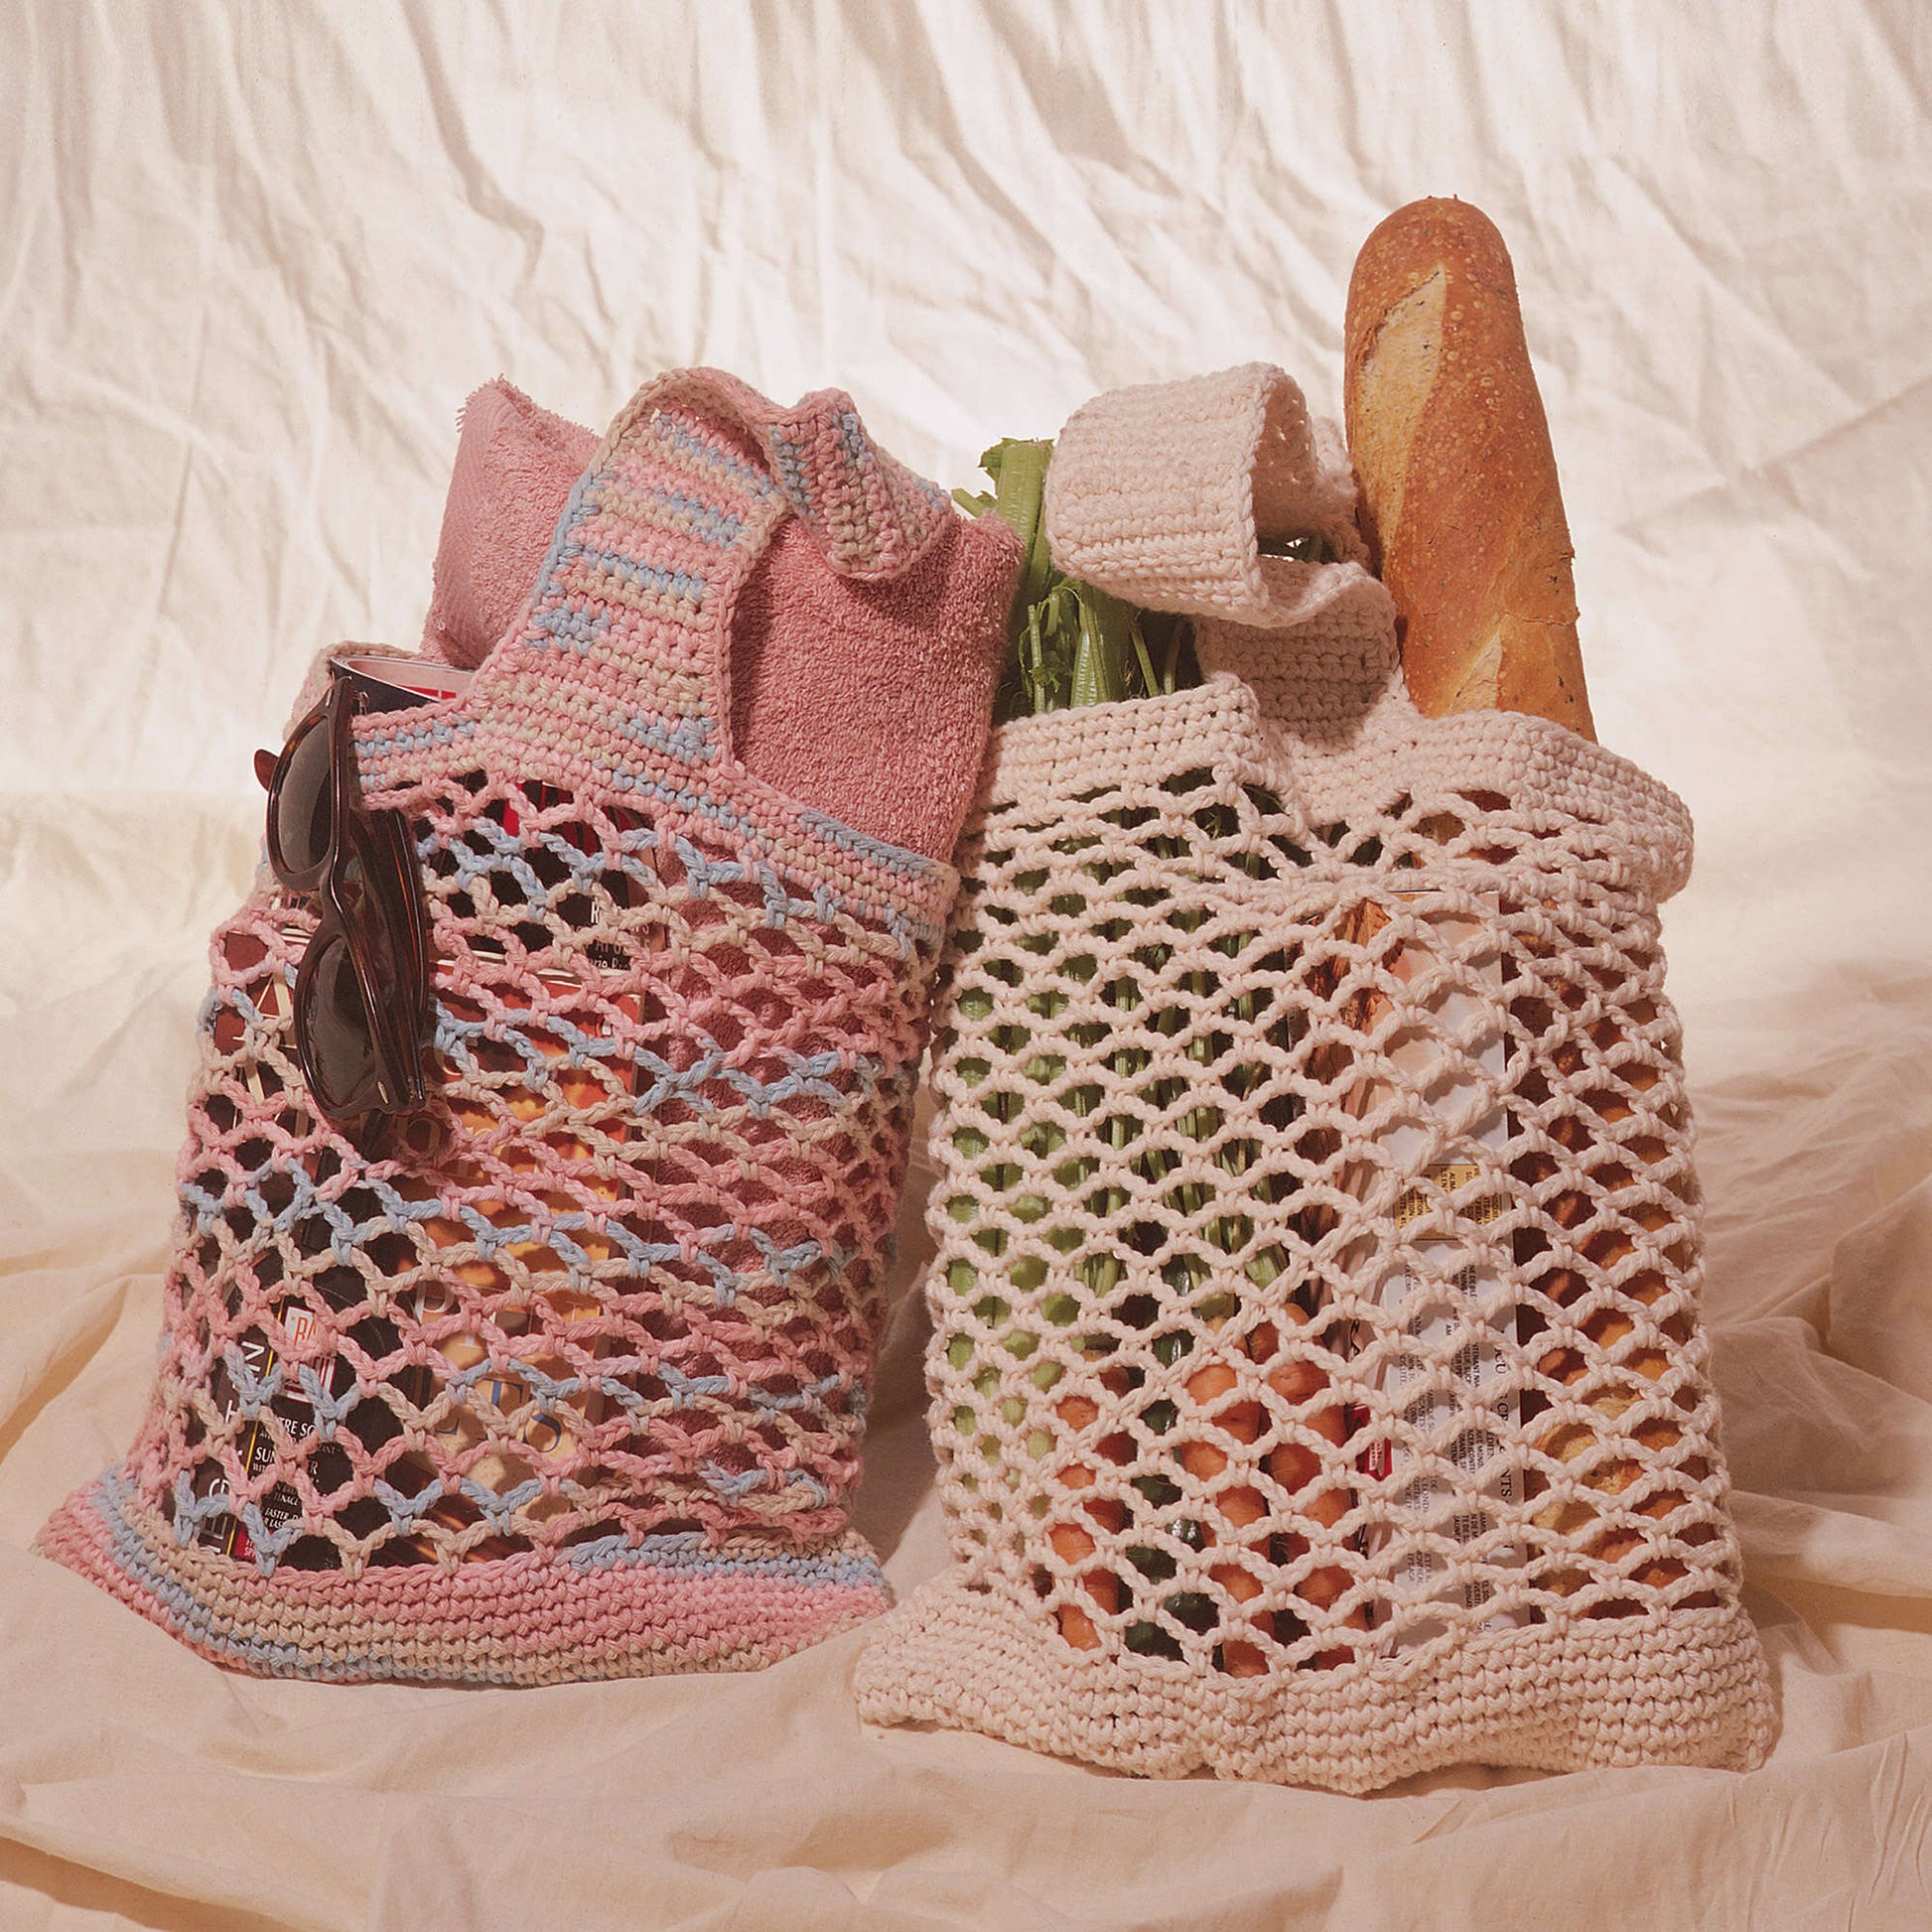 Bernat String Market Bag Crochet Bag made in Bernat Handicrafter Cotton yarn